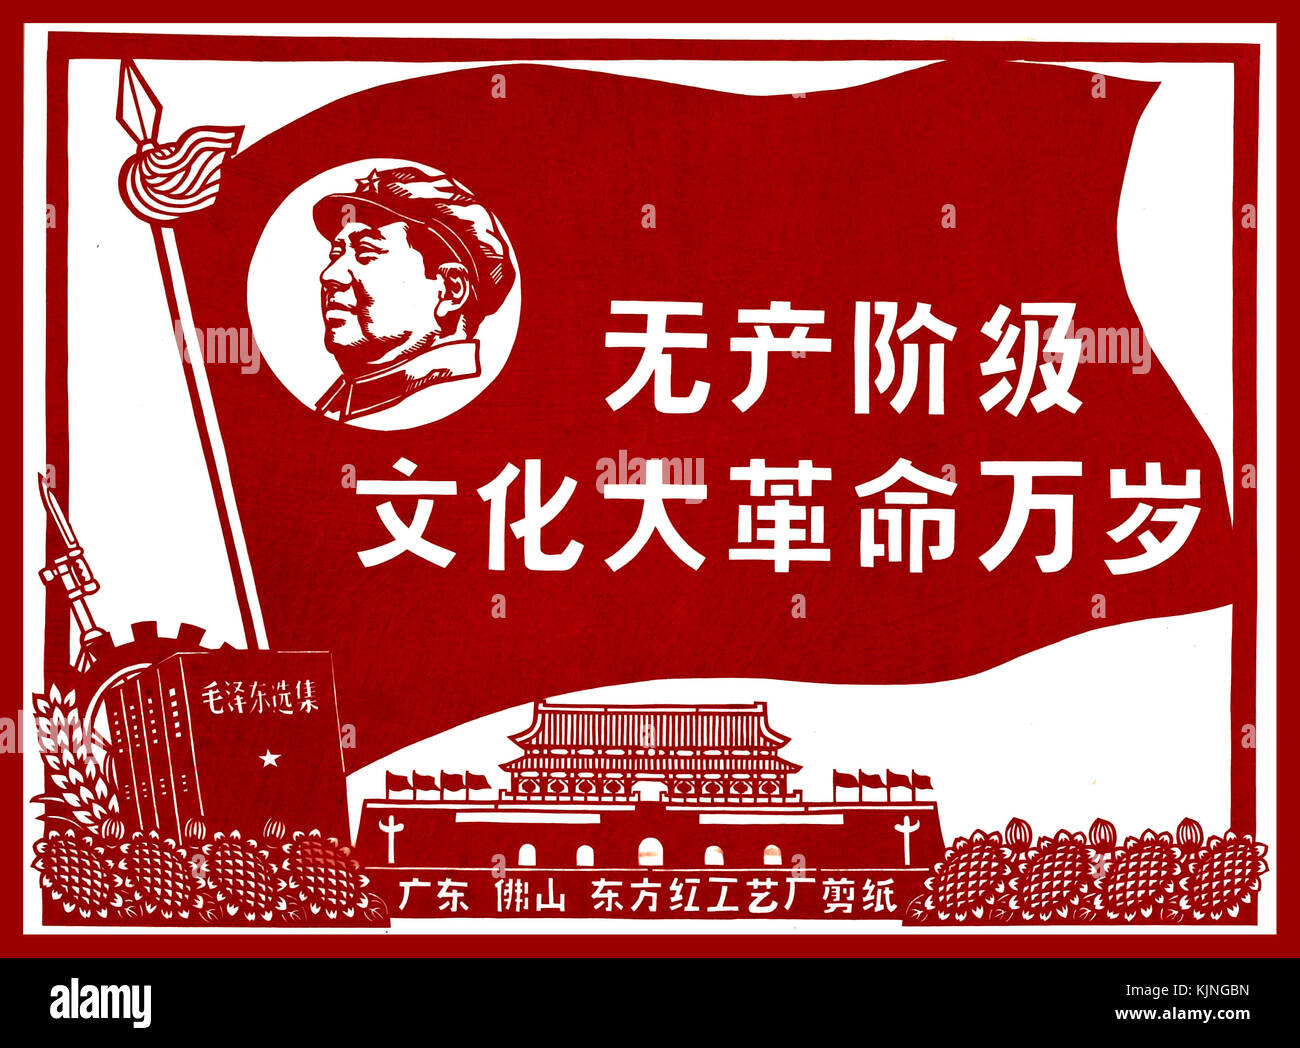 Storico Vintage propaganda politica poster per il Presidente Mao "Evviva il grande proletario rivoluzione culturale in Cina" Foto Stock